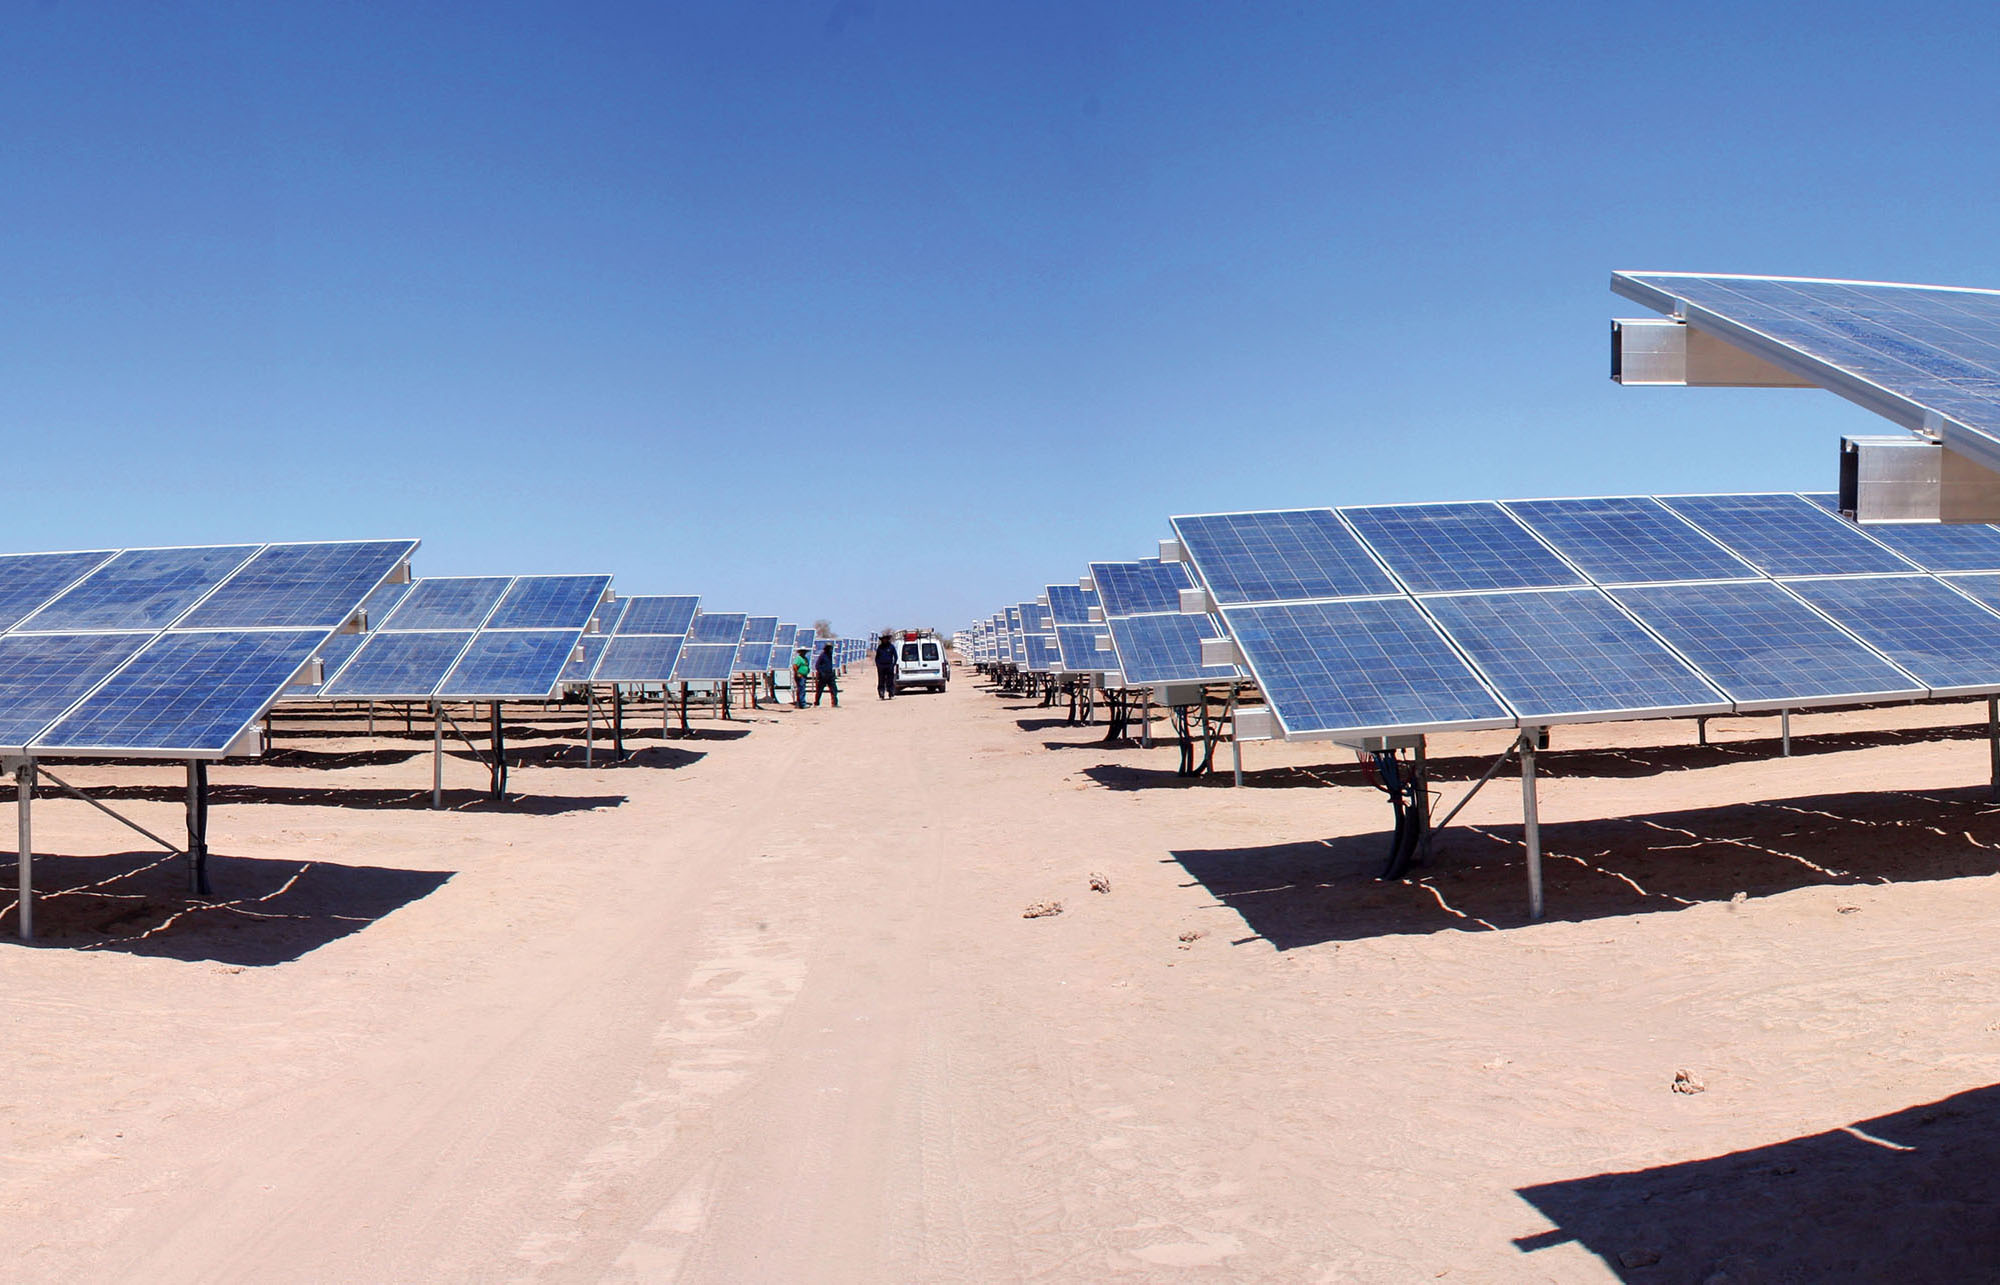 A large solar farm in the Atacama Desert, Tarapacá, Chile. (Photo by zwansaurio.)